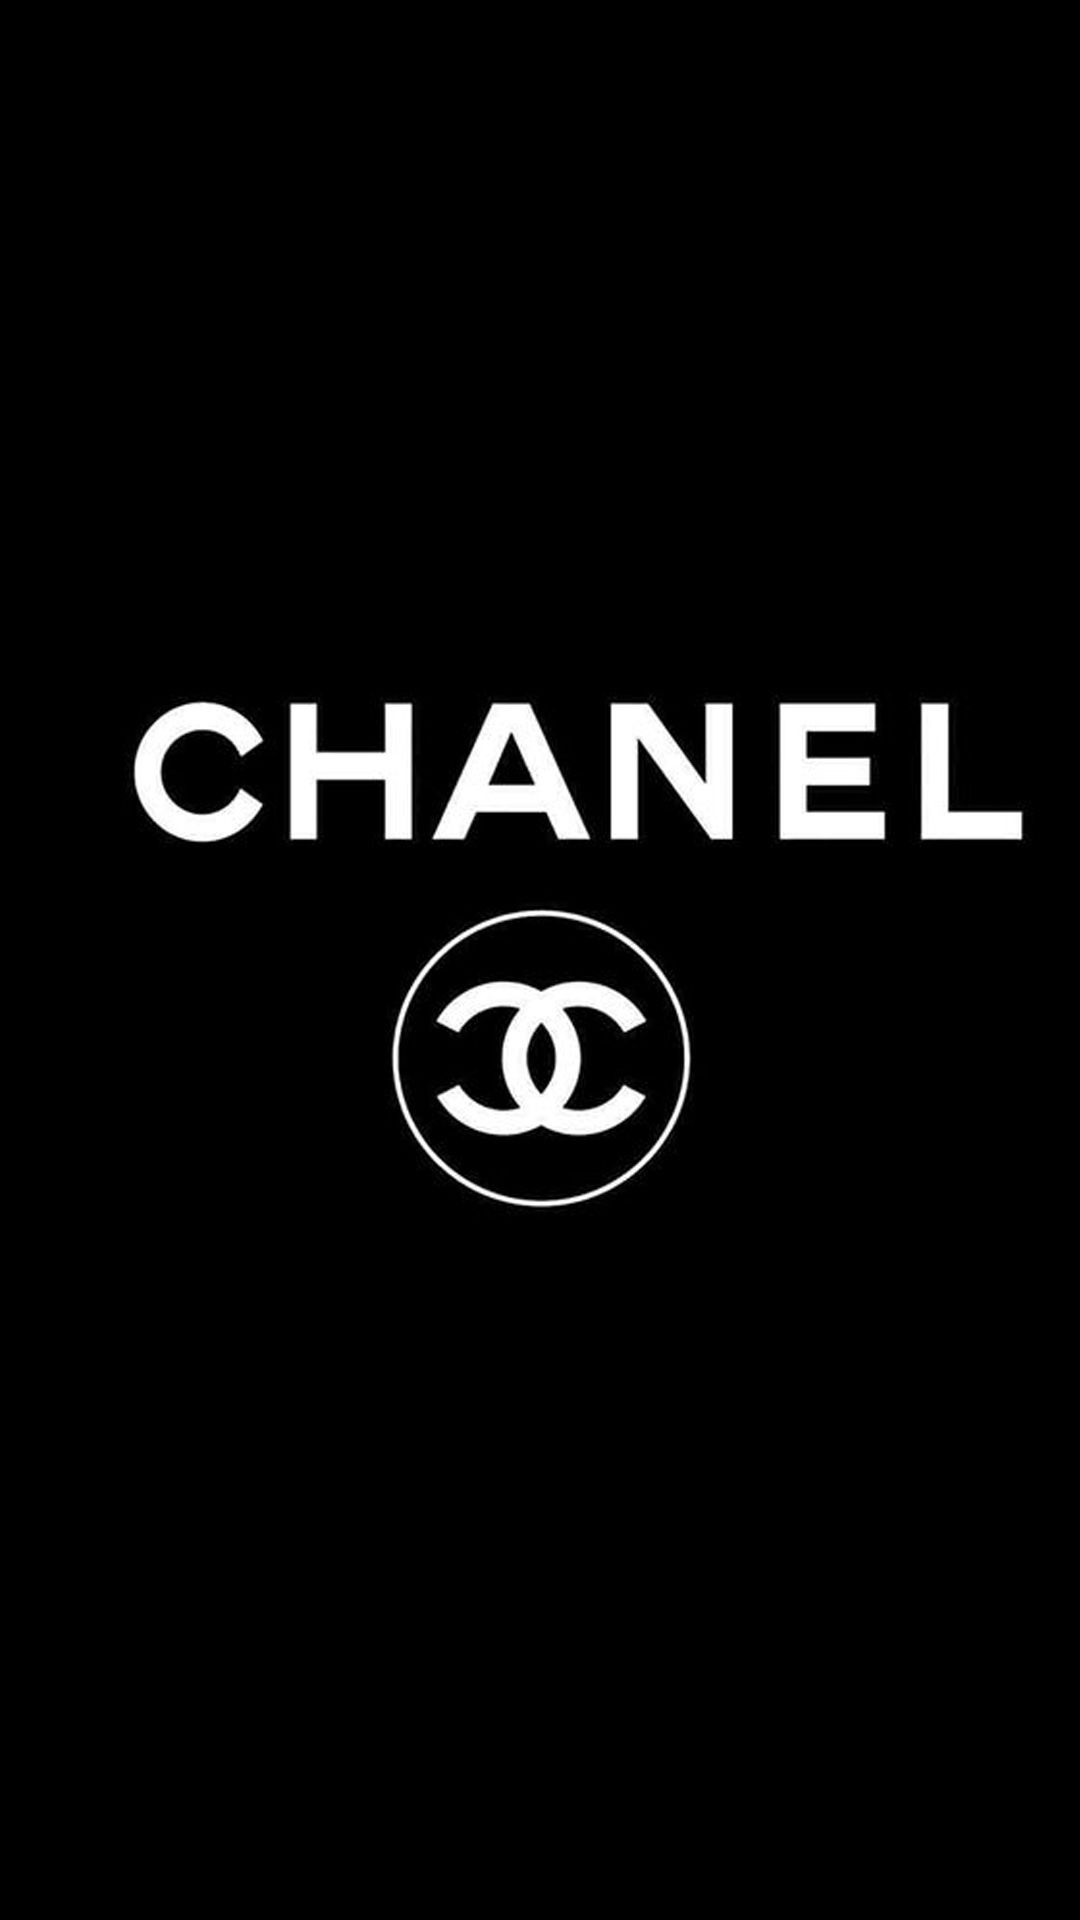 Biểu tượng Coco Chanel là sự tinh tế và đẳng cấp tuyệt đối, một thương hiệu mang lại cho phái đẹp sự tự tin và thu hút. Nếu bạn muốn khám phá vẻ đẹp của biểu tượng này, hãy xem ngay bức ảnh liên quan.